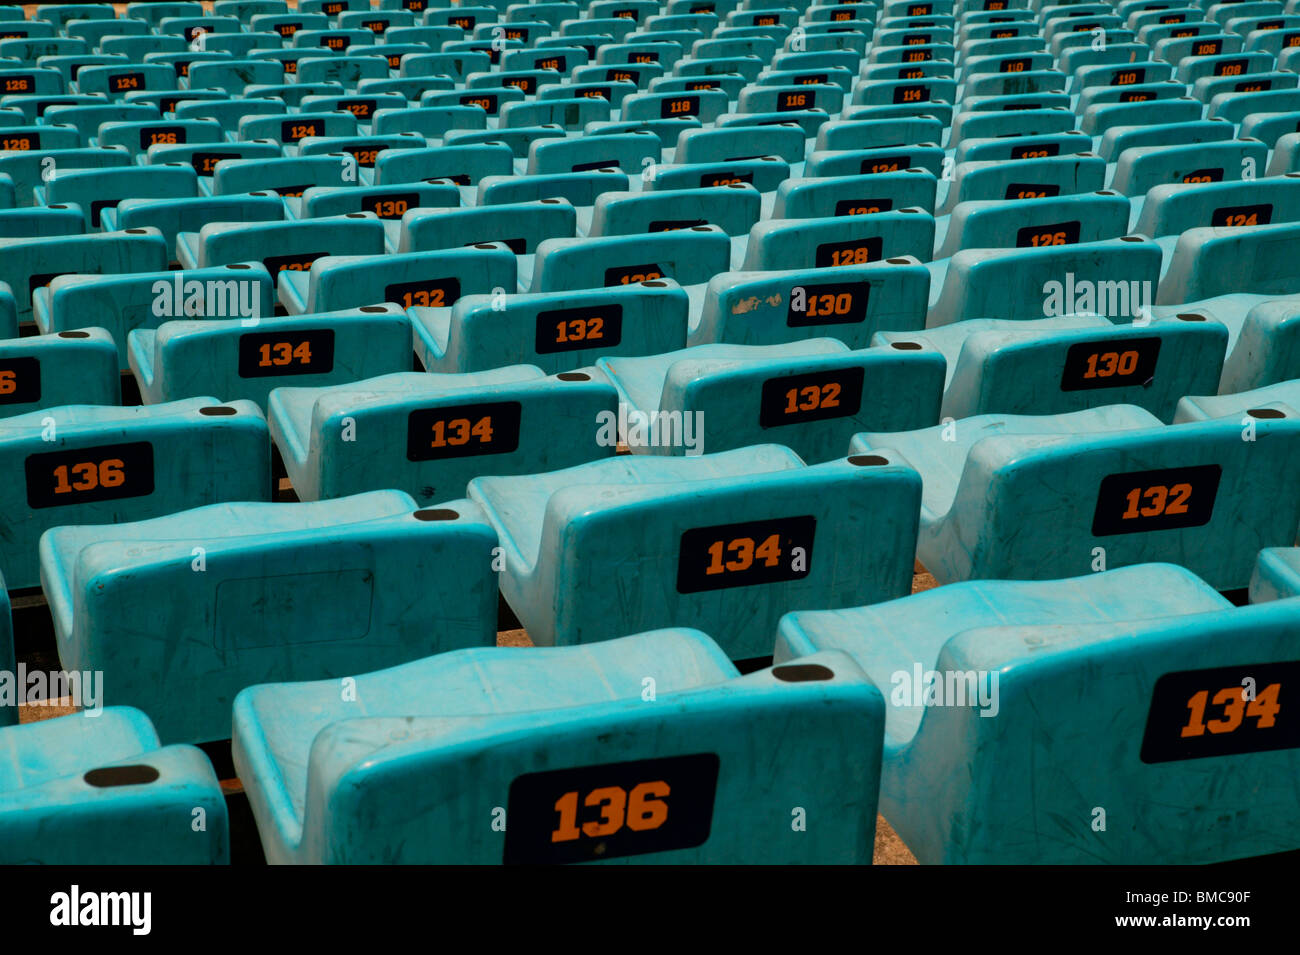 Les sièges du stade de sports dans une vue montrant le numéro de siège Banque D'Images